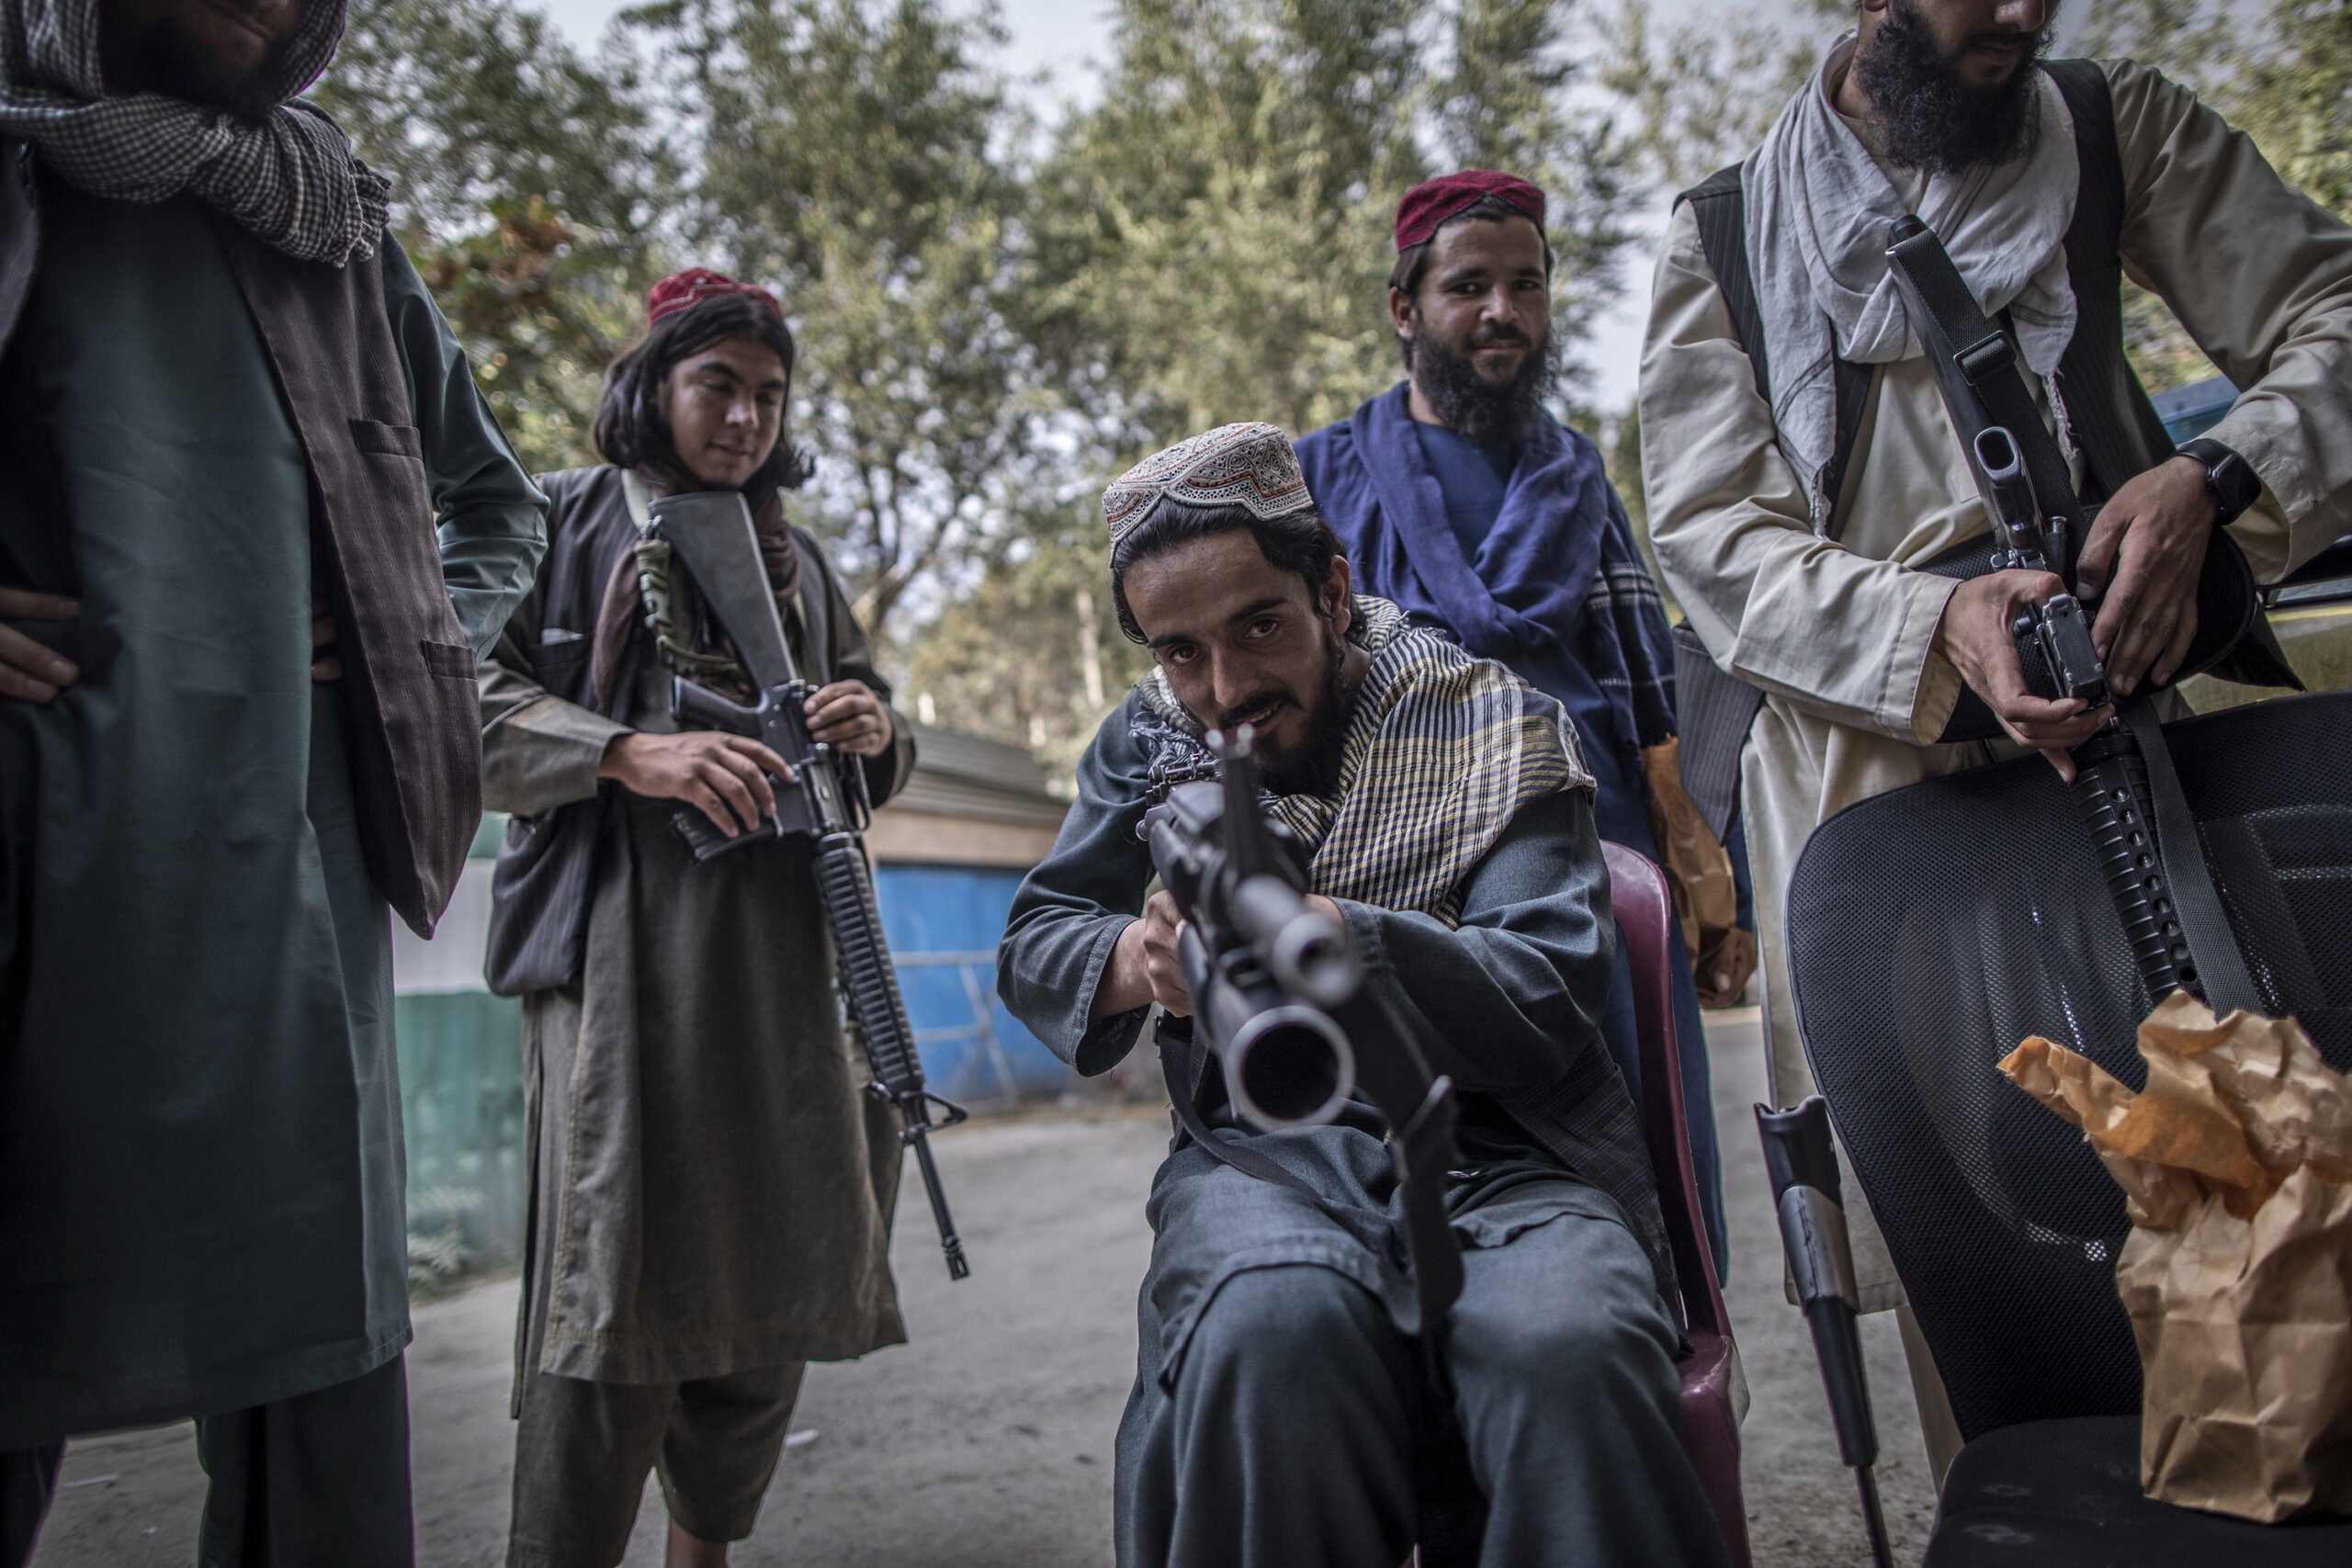 taliban fighter pointing gun at camera